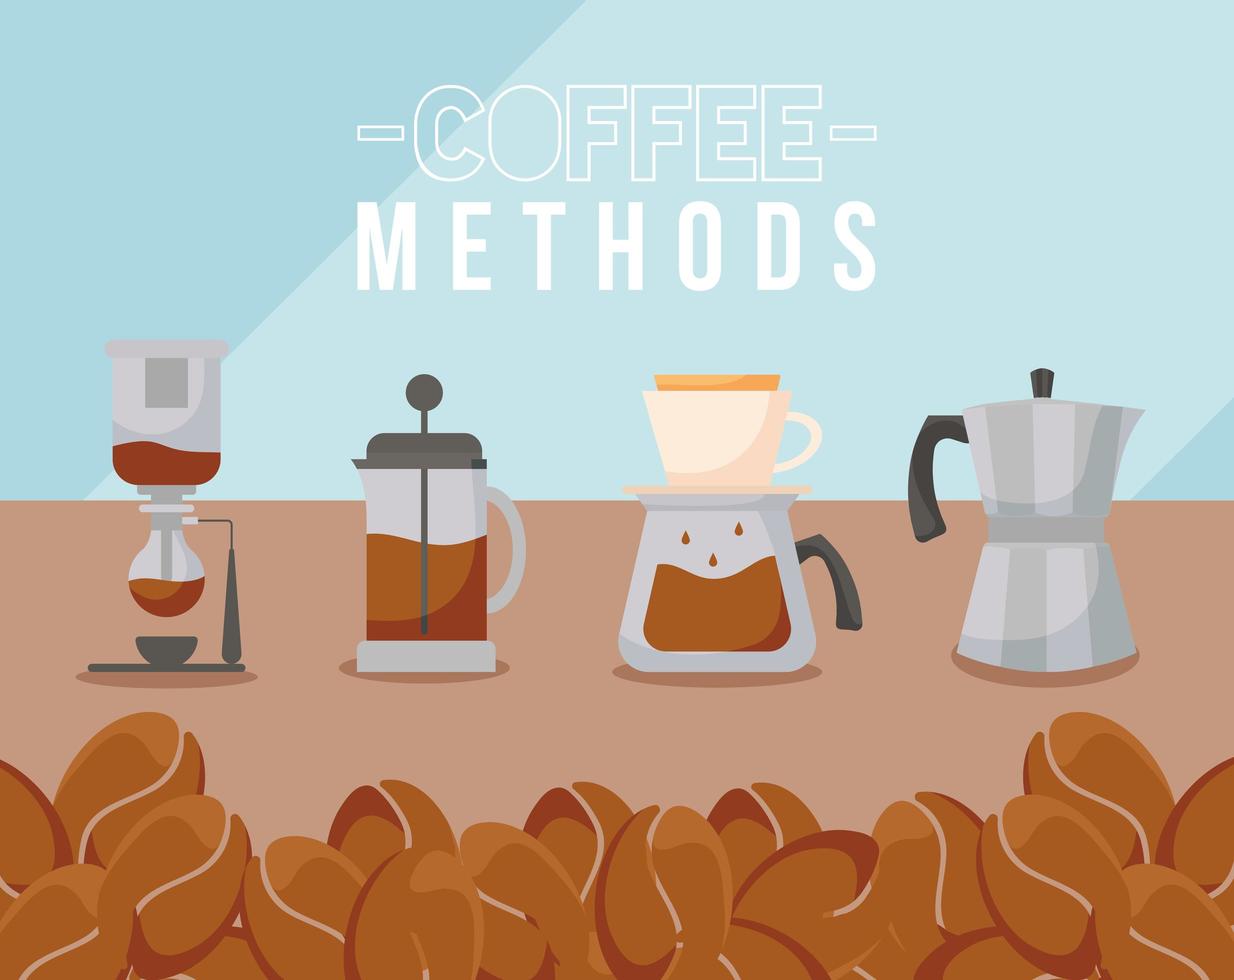 métodos de café com prensa francesa, panela, chaleira e design de vetor de grãos